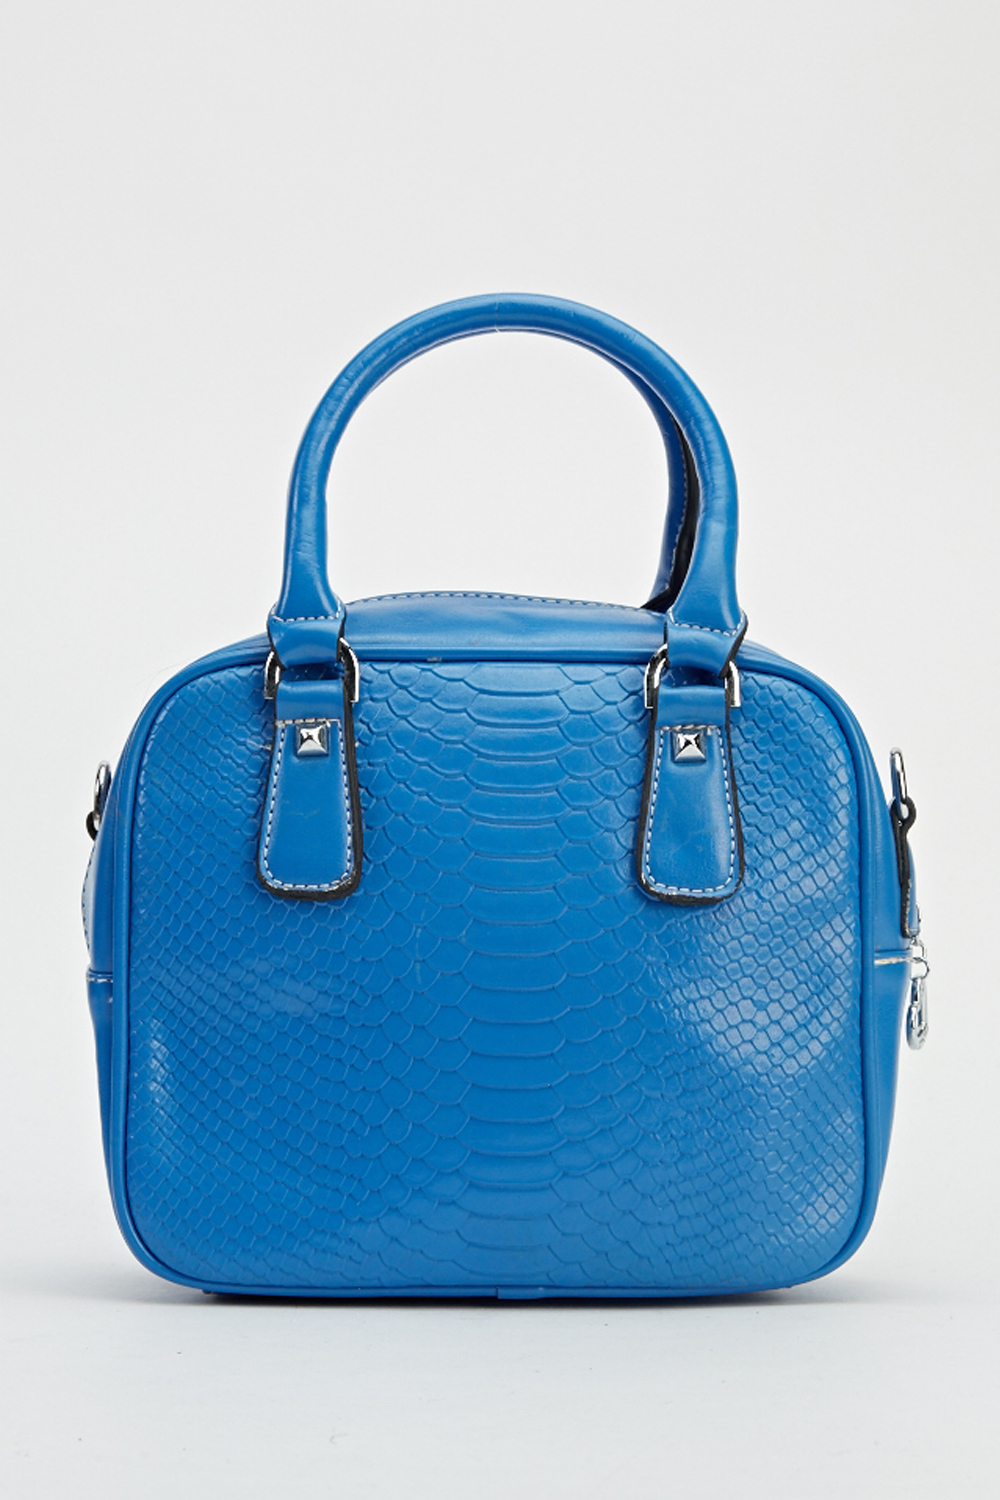 Download Blue Mock Croc Small Handbag - Just $7